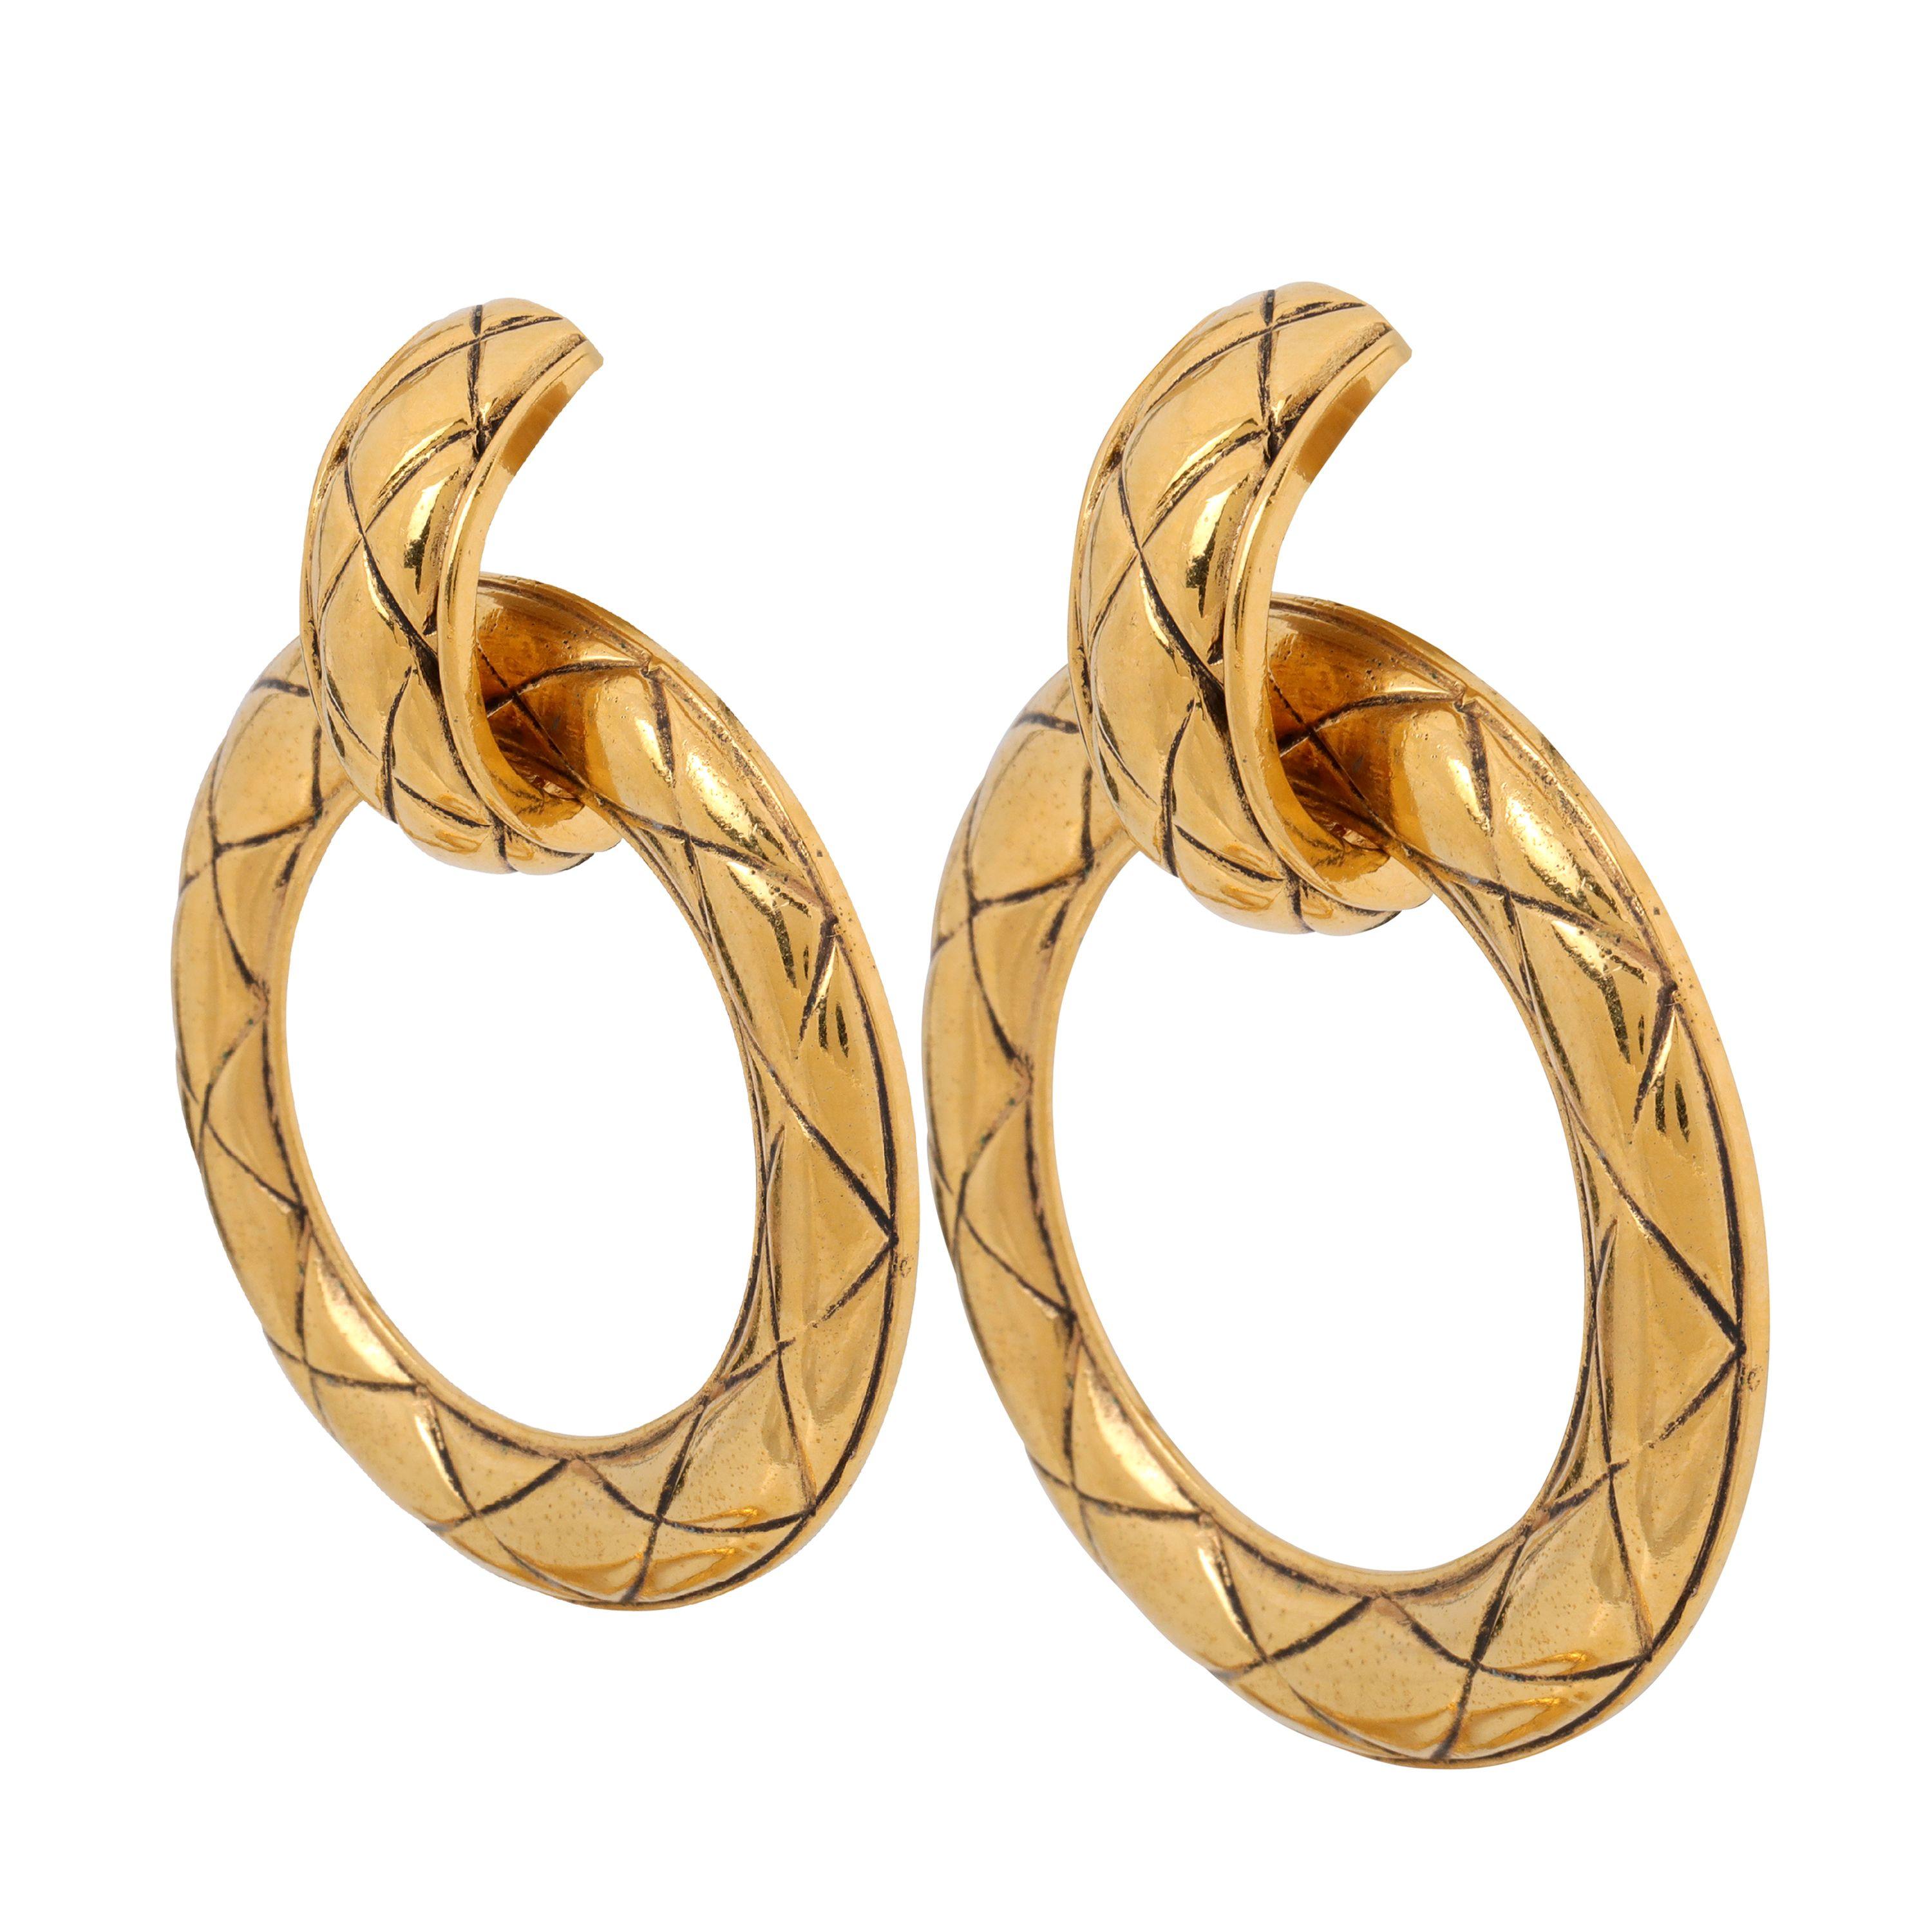 Ces authentiques boucles d'oreilles Chanel en or sont en excellent état et datent des années 1980.  De larges anneaux dorés sur le devant sont gravés du matelassage caractéristique de Chanel.  Style à clip.  Fabriqué en France. Pochette ou boîte